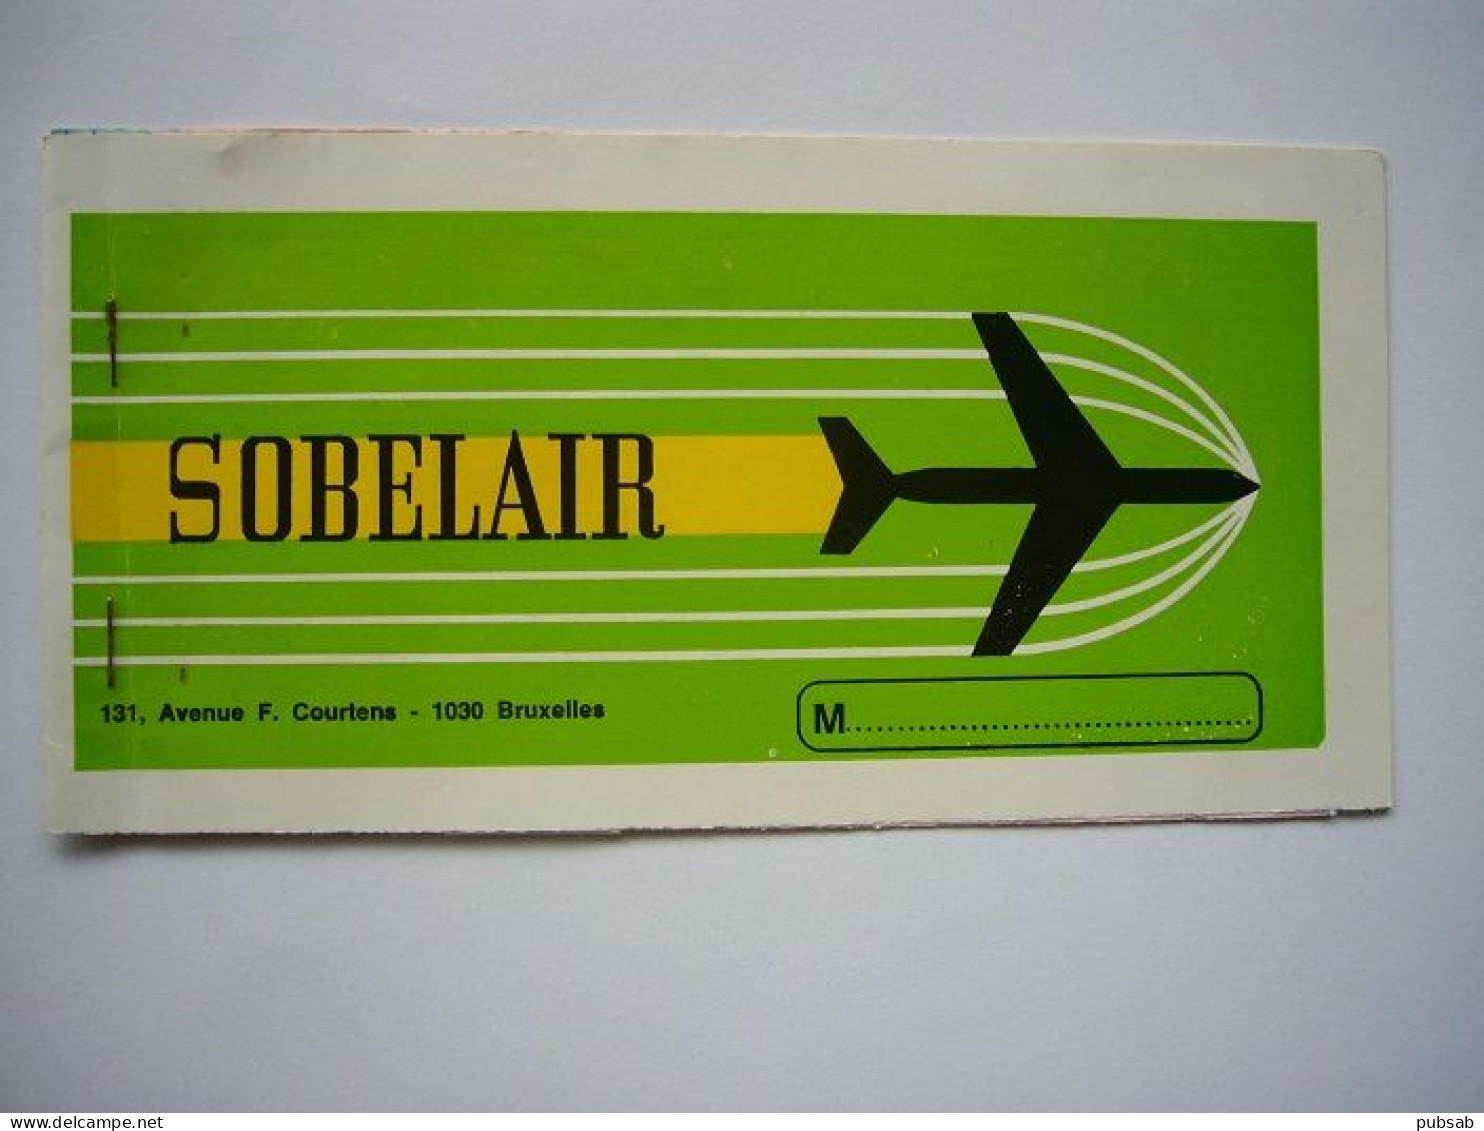 Avion / Airplane / SOBELAIR / Airline Ticket / Madeira To Brussels / 05.08.74. - Biglietti